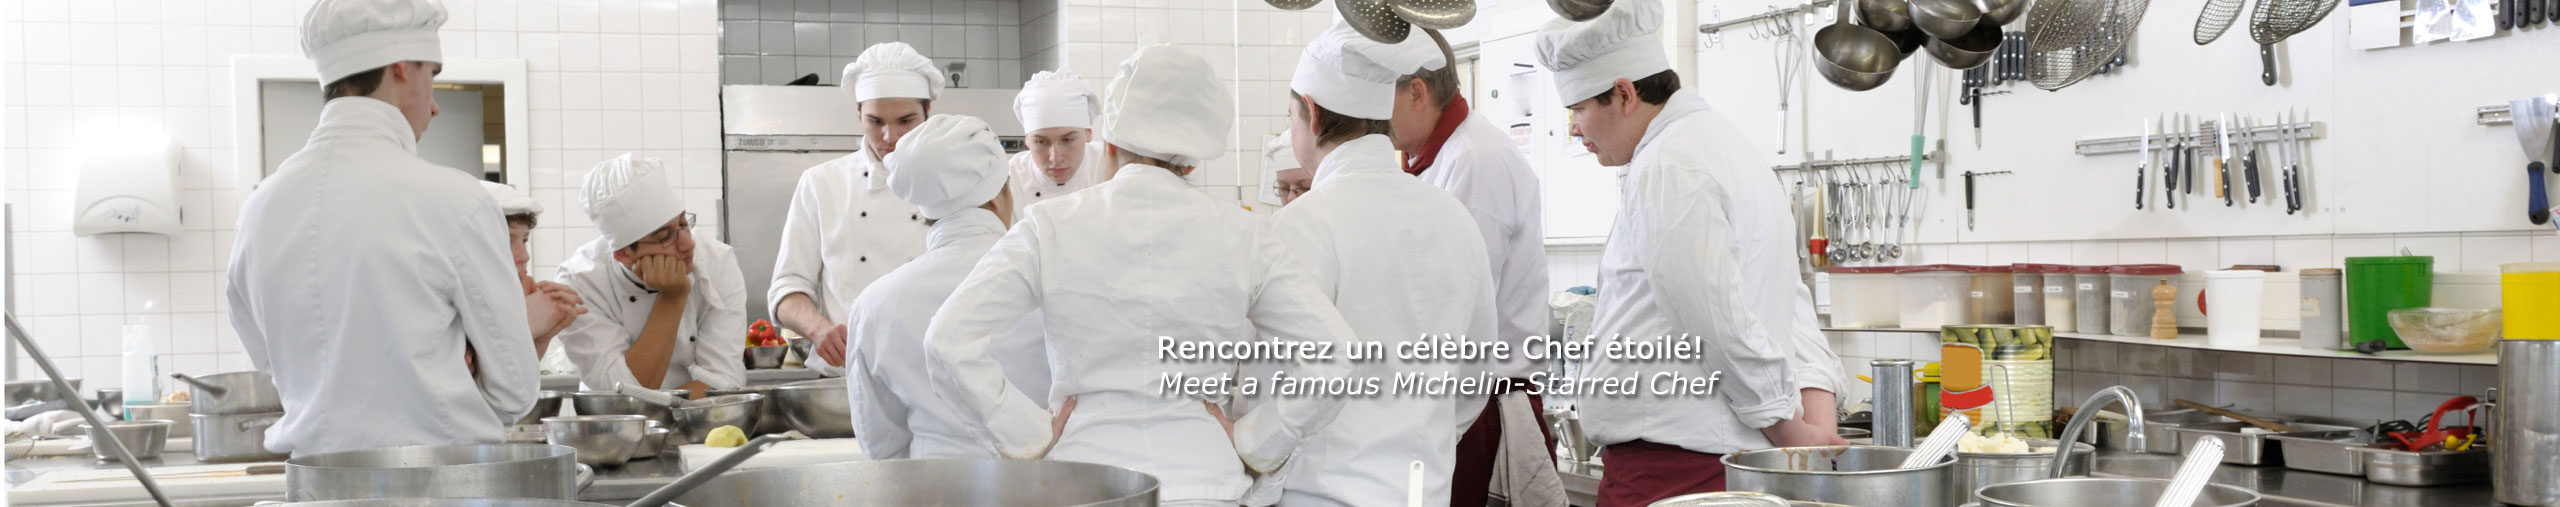 Meet a famous Michelin-starred Chef, gastronomy paris tour